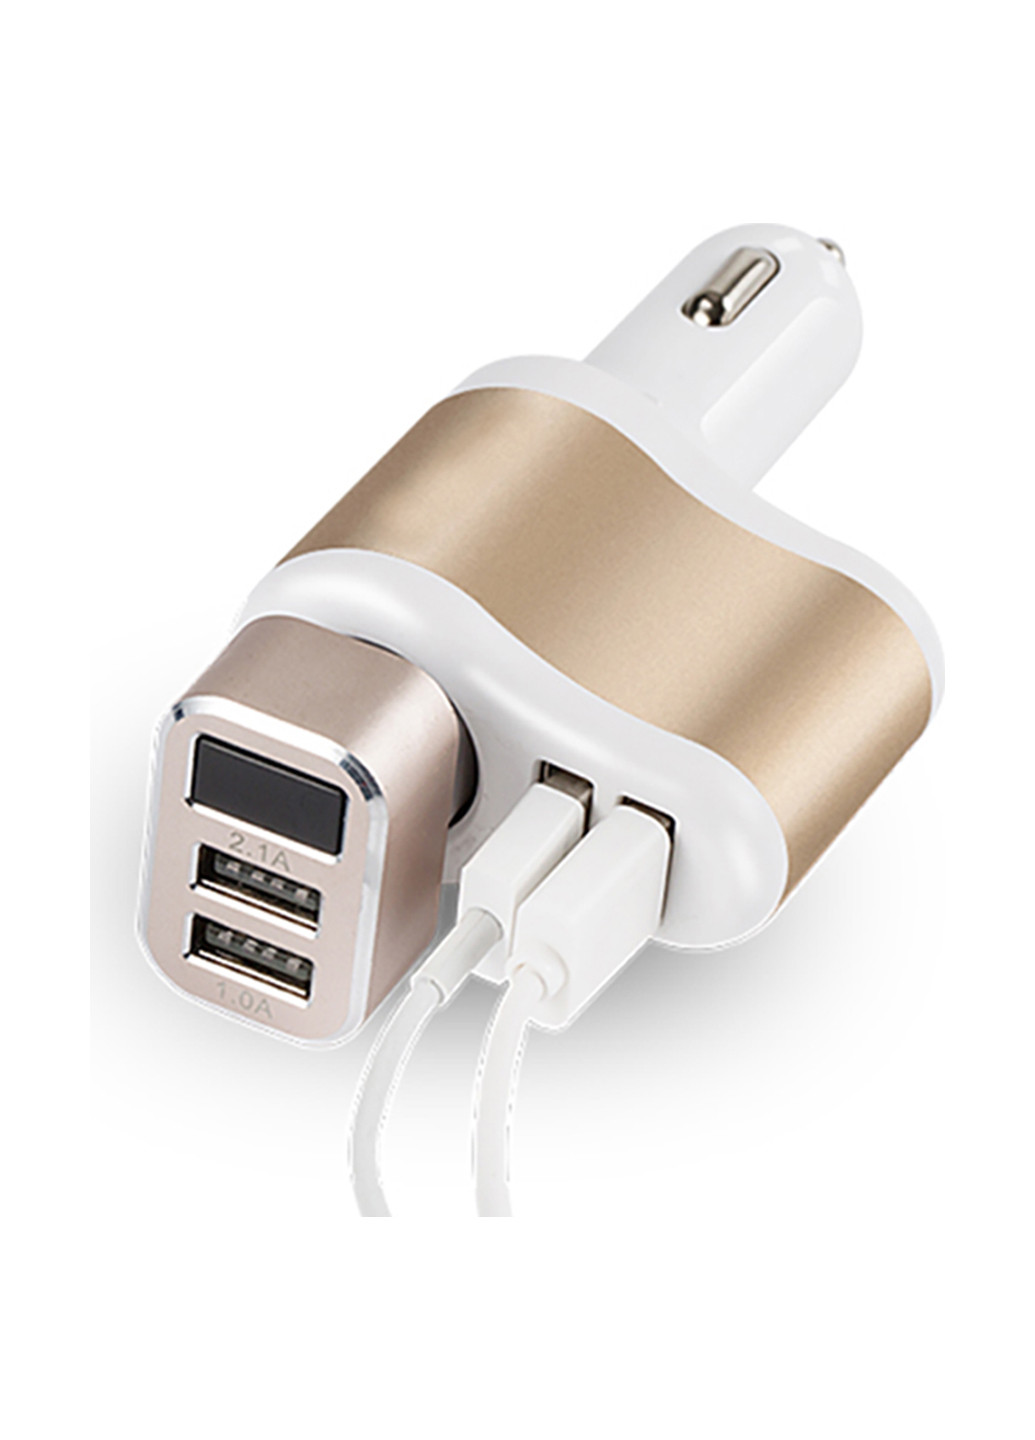 Автомобильное зарядное устройство 2 USB, 2.1A + авто разветветиль Gold/White XoKo cc-303 (132540129)